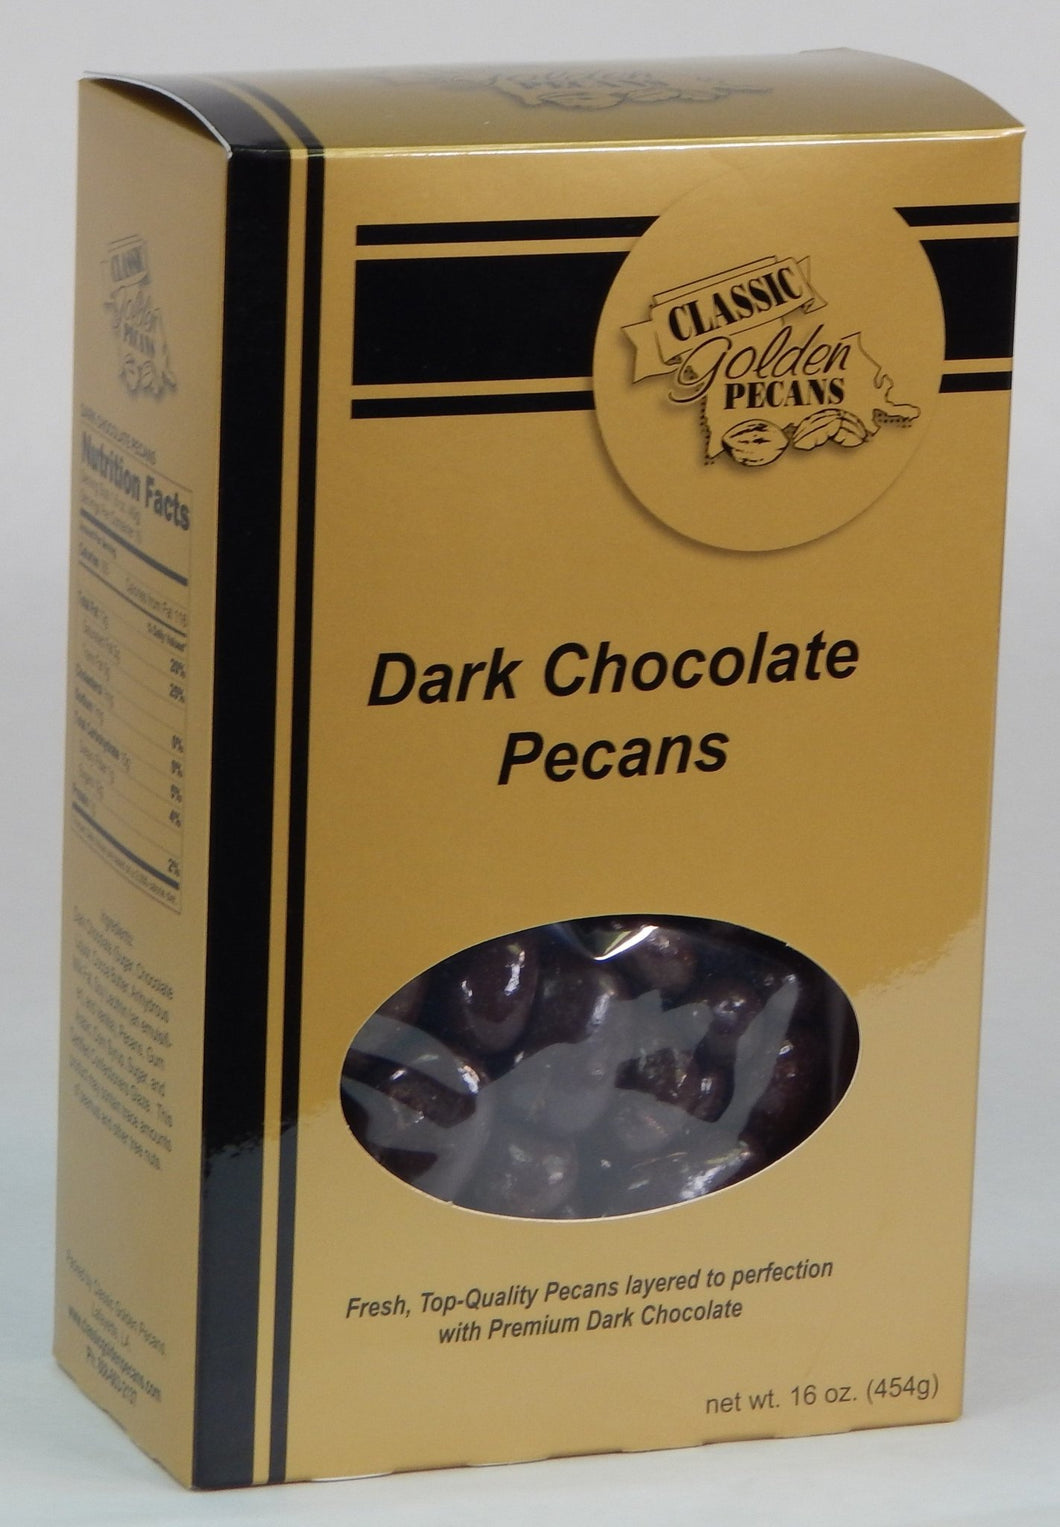 Classic Golden Pecans - Dark Chocolate Pecans by Classic Golden Pecans - | Delivery near me in ... Farm2Me #url#